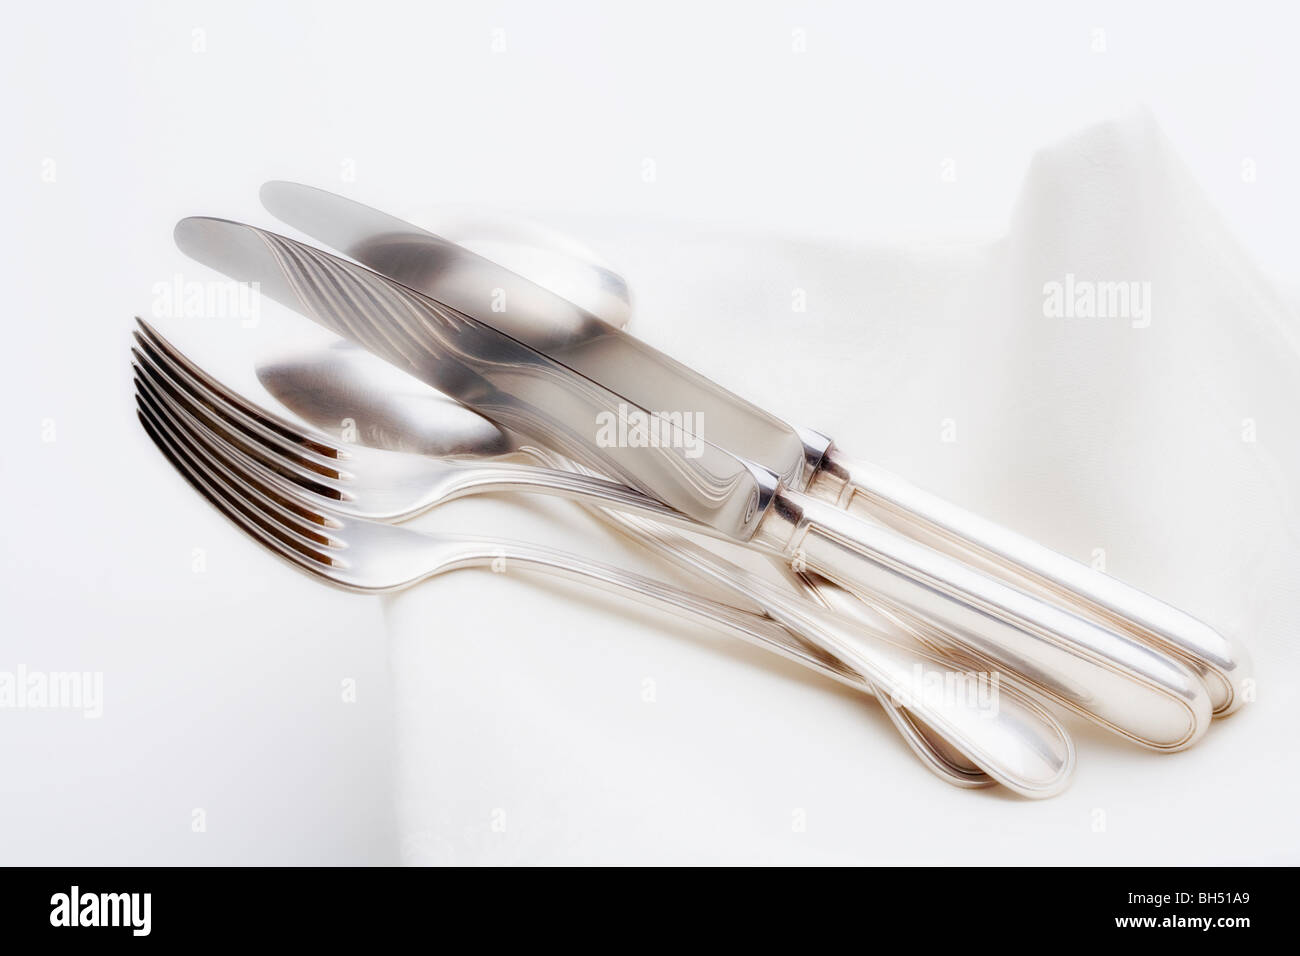 De l'argenterie - gros plan du couteau fourchette et cuillère élégante sur un tissu blanc Banque D'Images